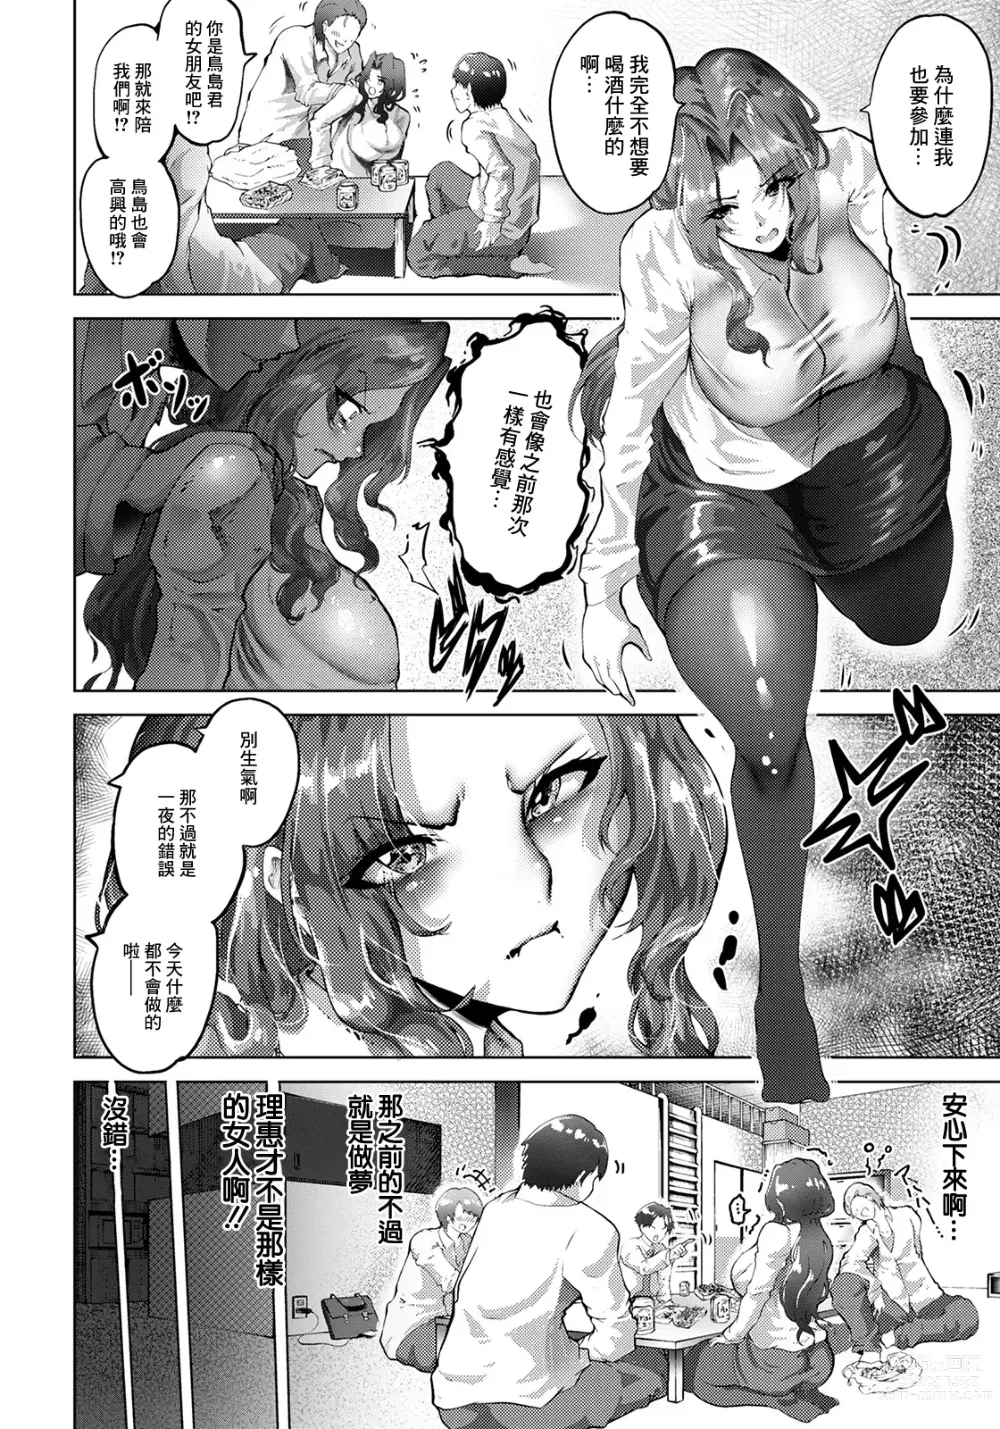 Page 6 of manga Netorare no  Nomikai